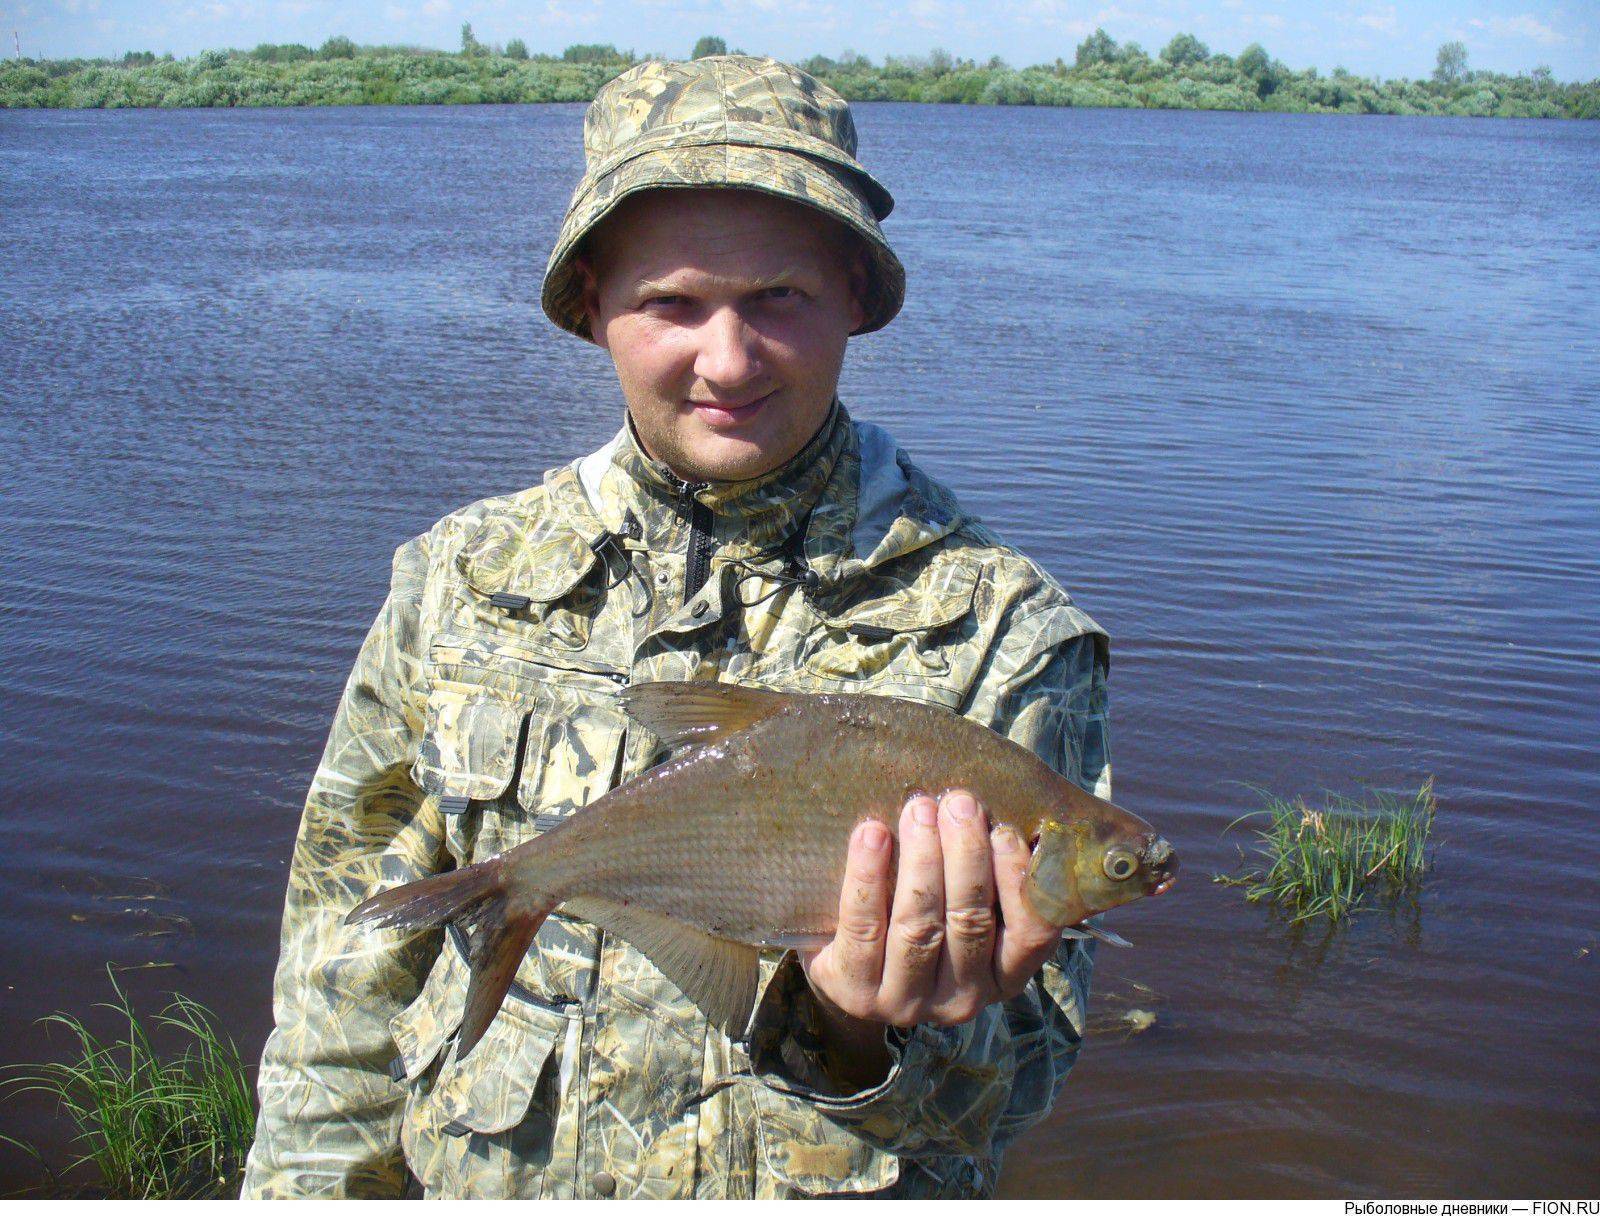 Рыбалка в тюмени в контакте. Рыболовство в Тюменской области. Рыбалка в Тюмени. Рыболовы Тюменской области. Река тура рыбалка.